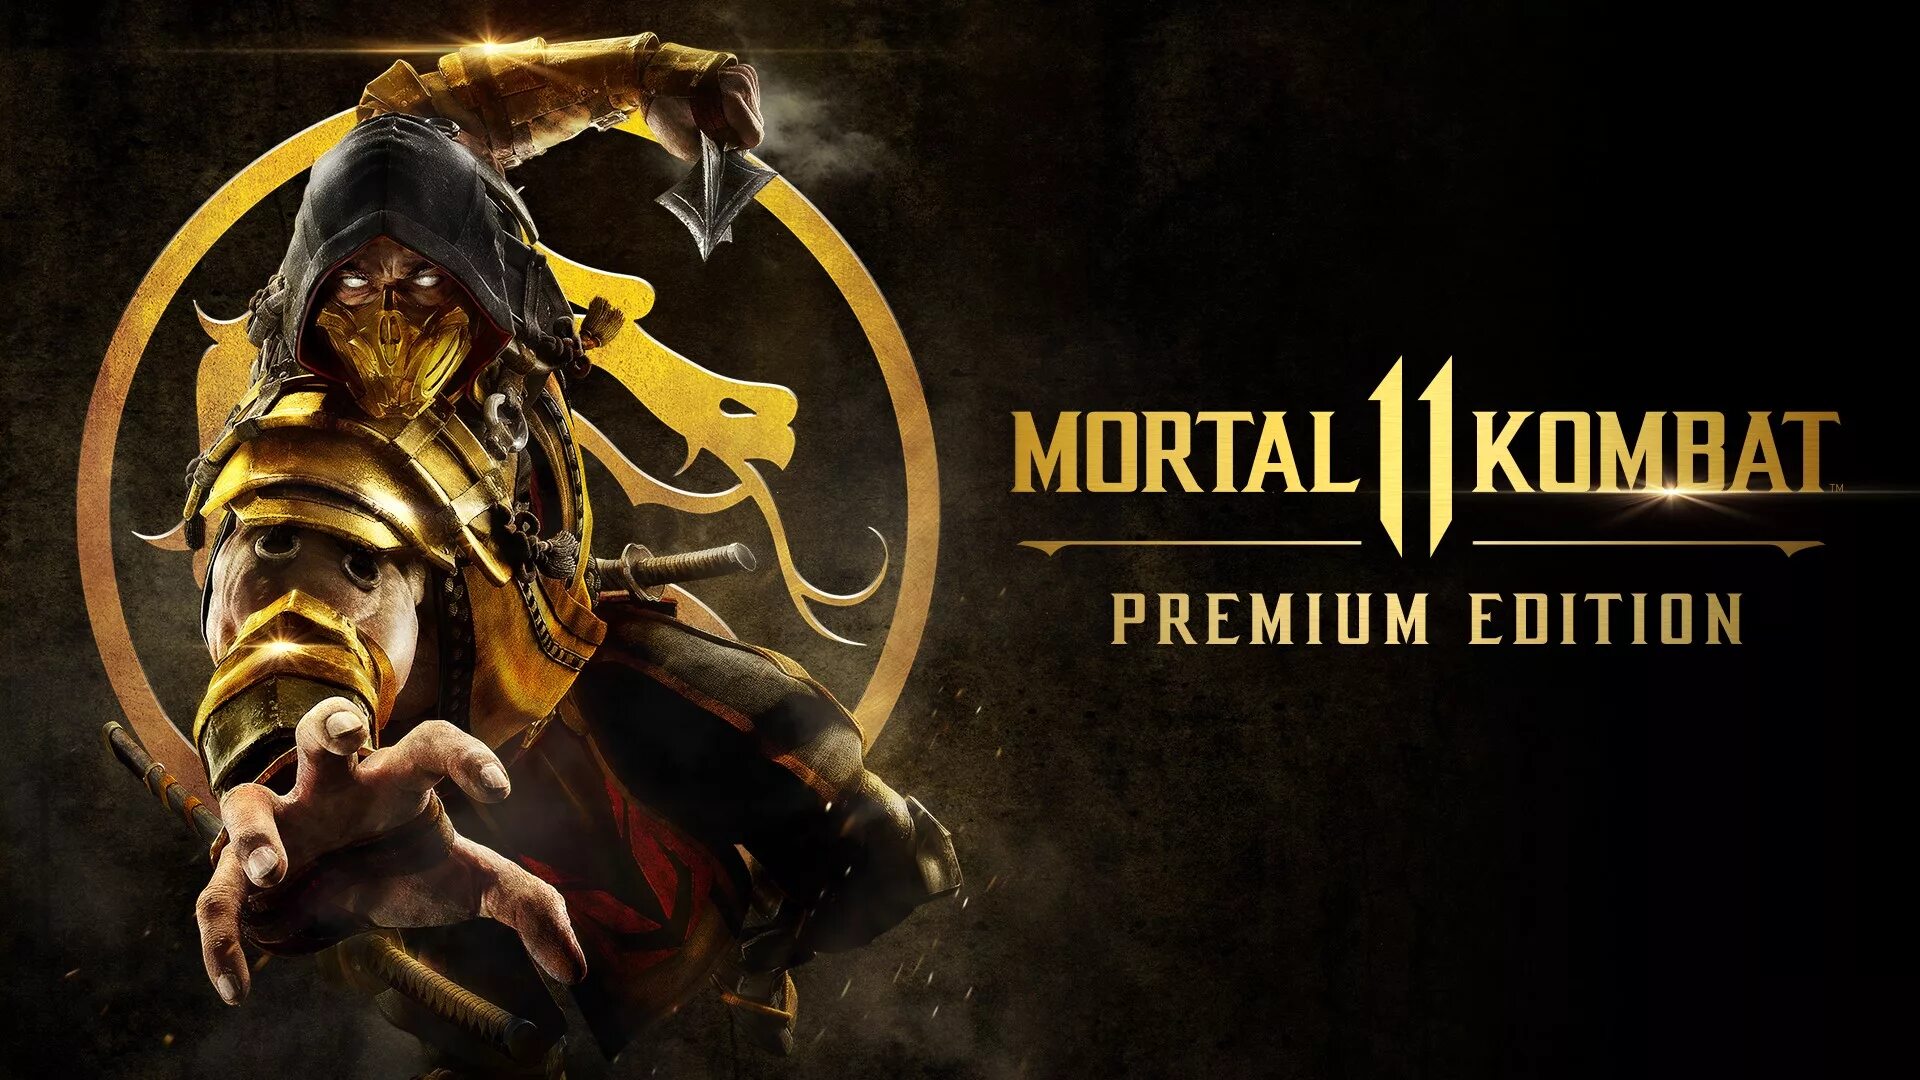 Мк11 ps4. MK 11 Ultimate. Mortal Kombat 11 (ps4). Mortal Kombat 11. Premium Edition. PLAYSTATION 4 Mortal Kombat 11 обложка.